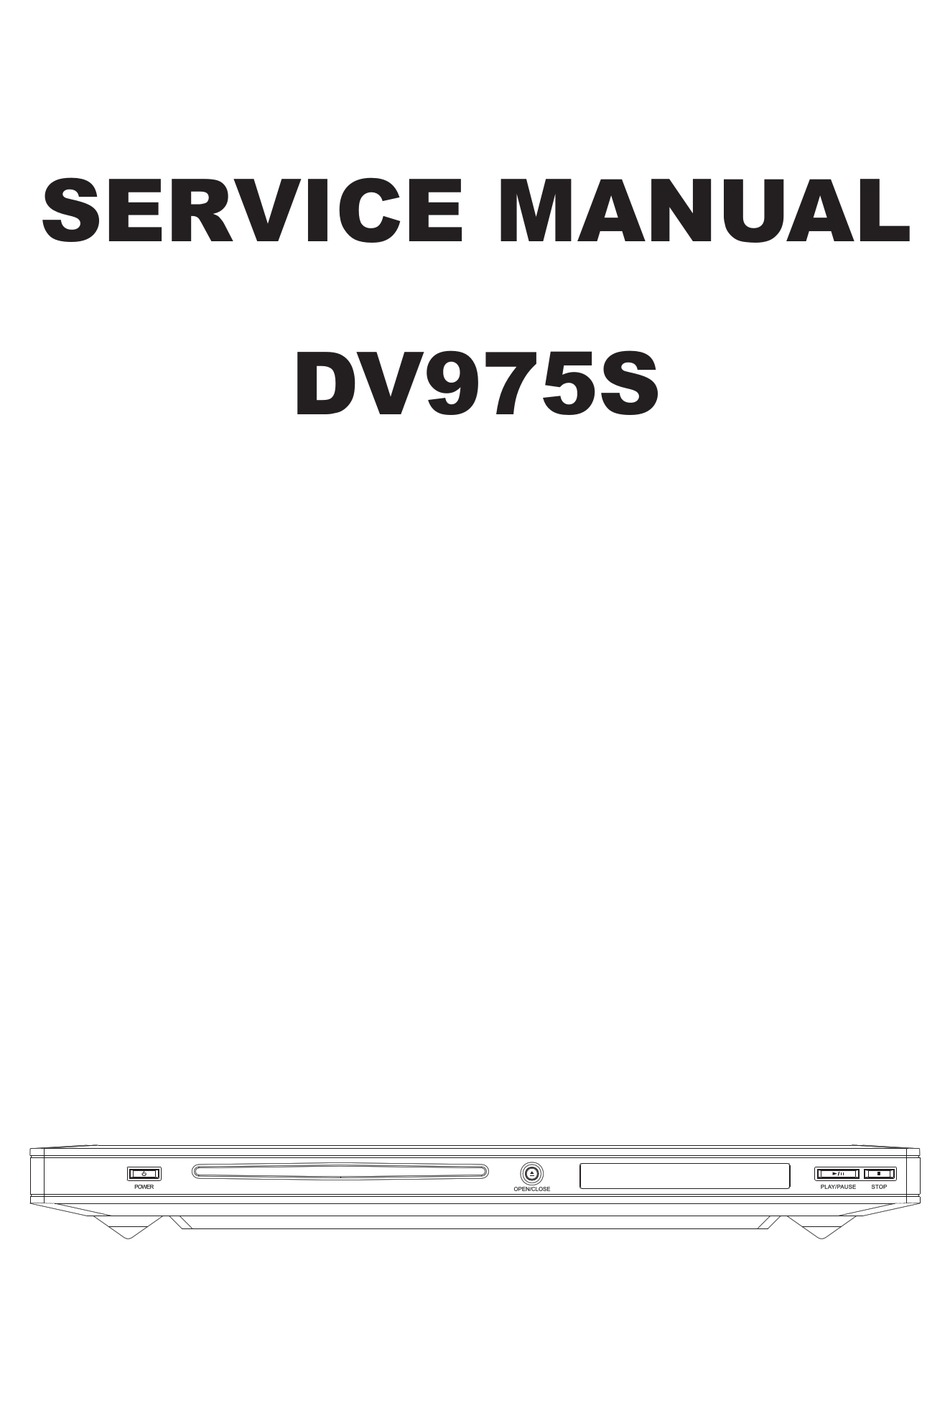 BBK DV975S SERVICE MANUAL Pdf Download | ManualsLib